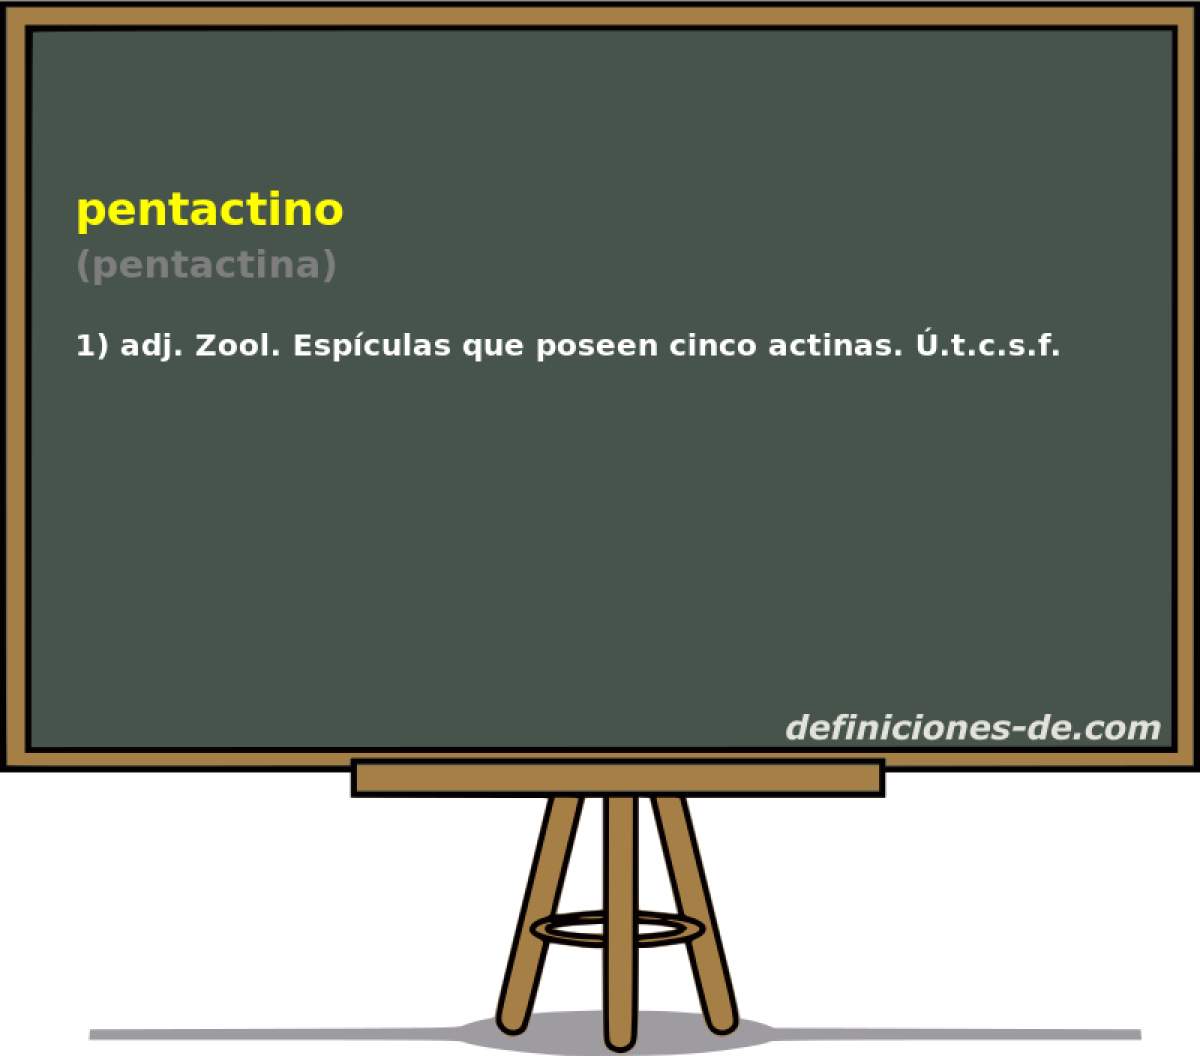 pentactino (pentactina)